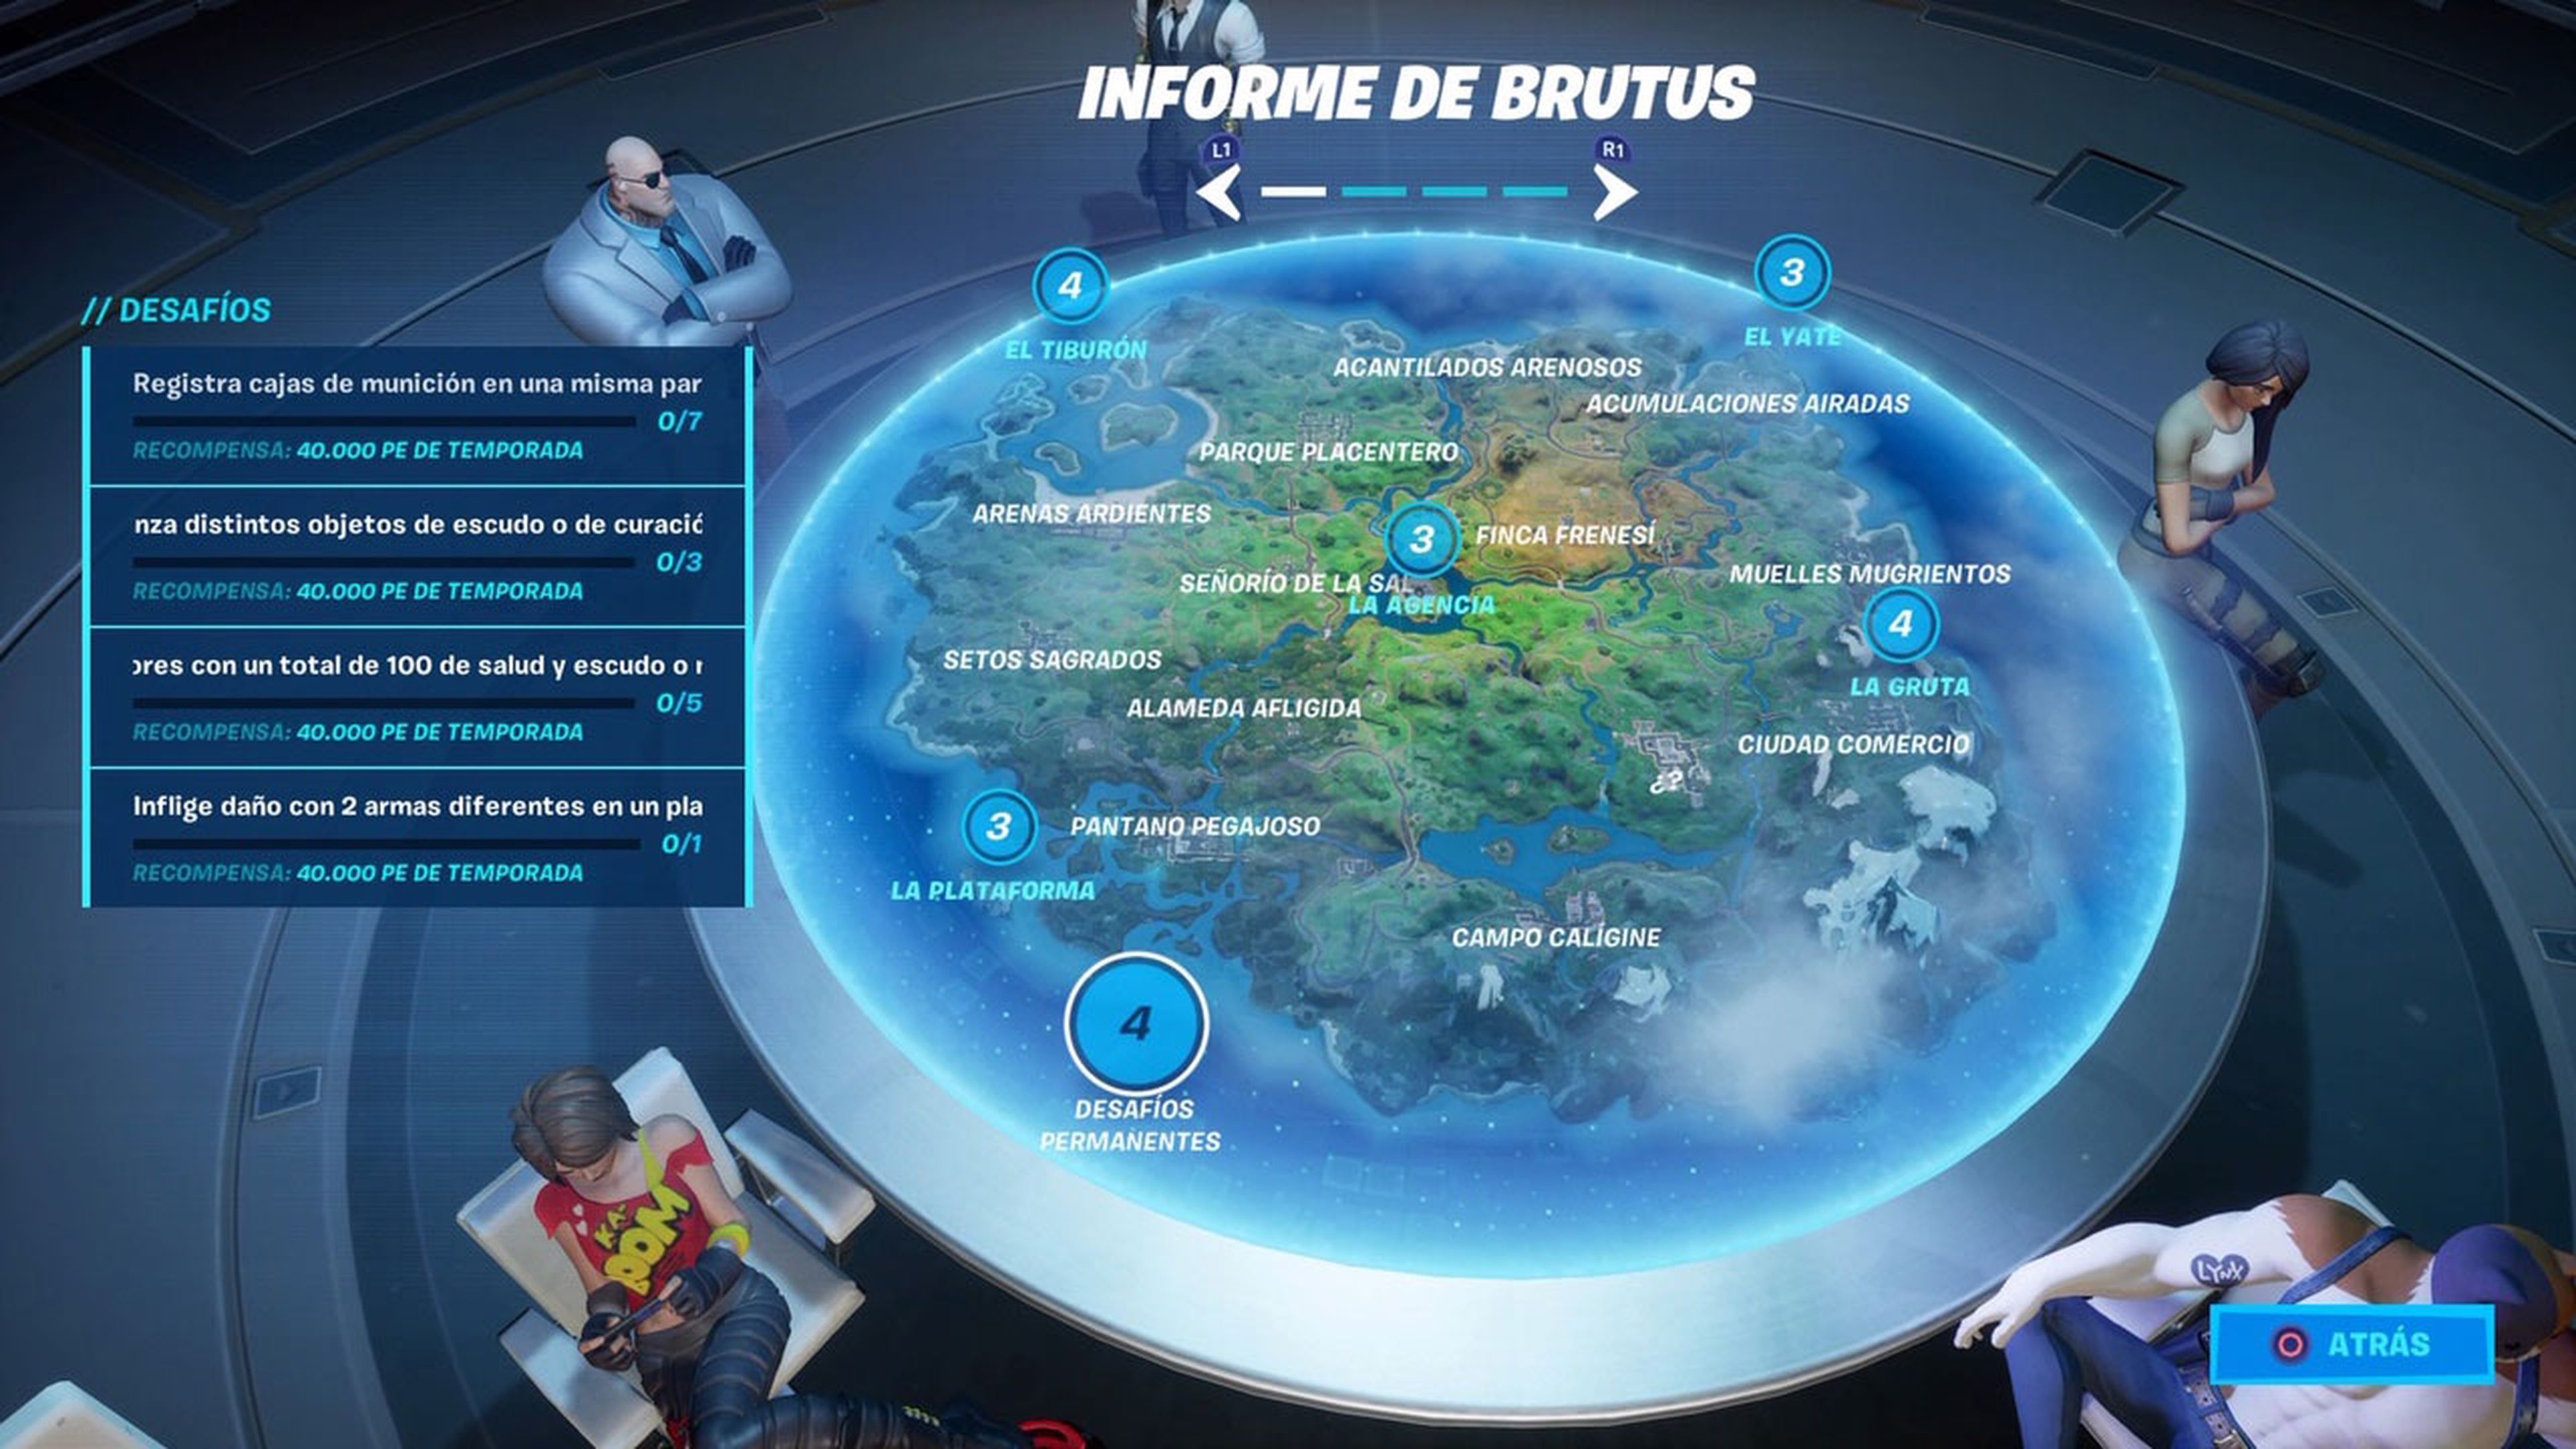 Informe de Brutus Fortnite Temporada 2